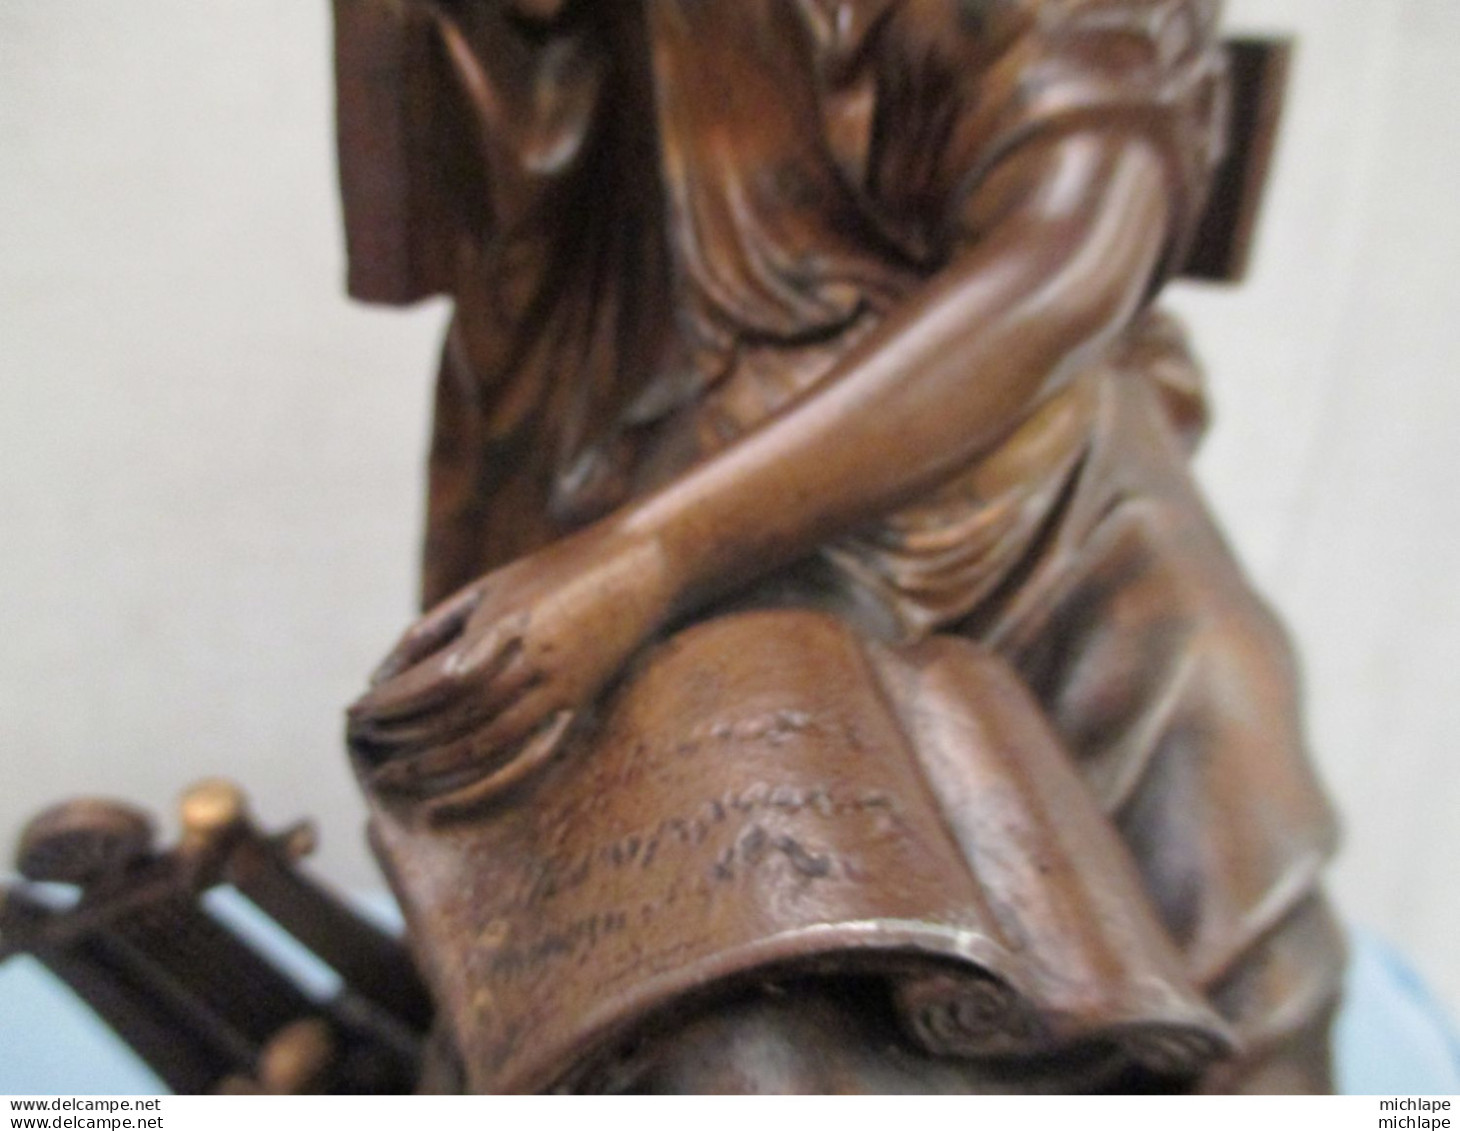 Belle Statuette Regul - LA LECTURE - Femme Assise Signé DORIO Parfait état Haut 28 Cm Poids 2 Kg 4 - Métal